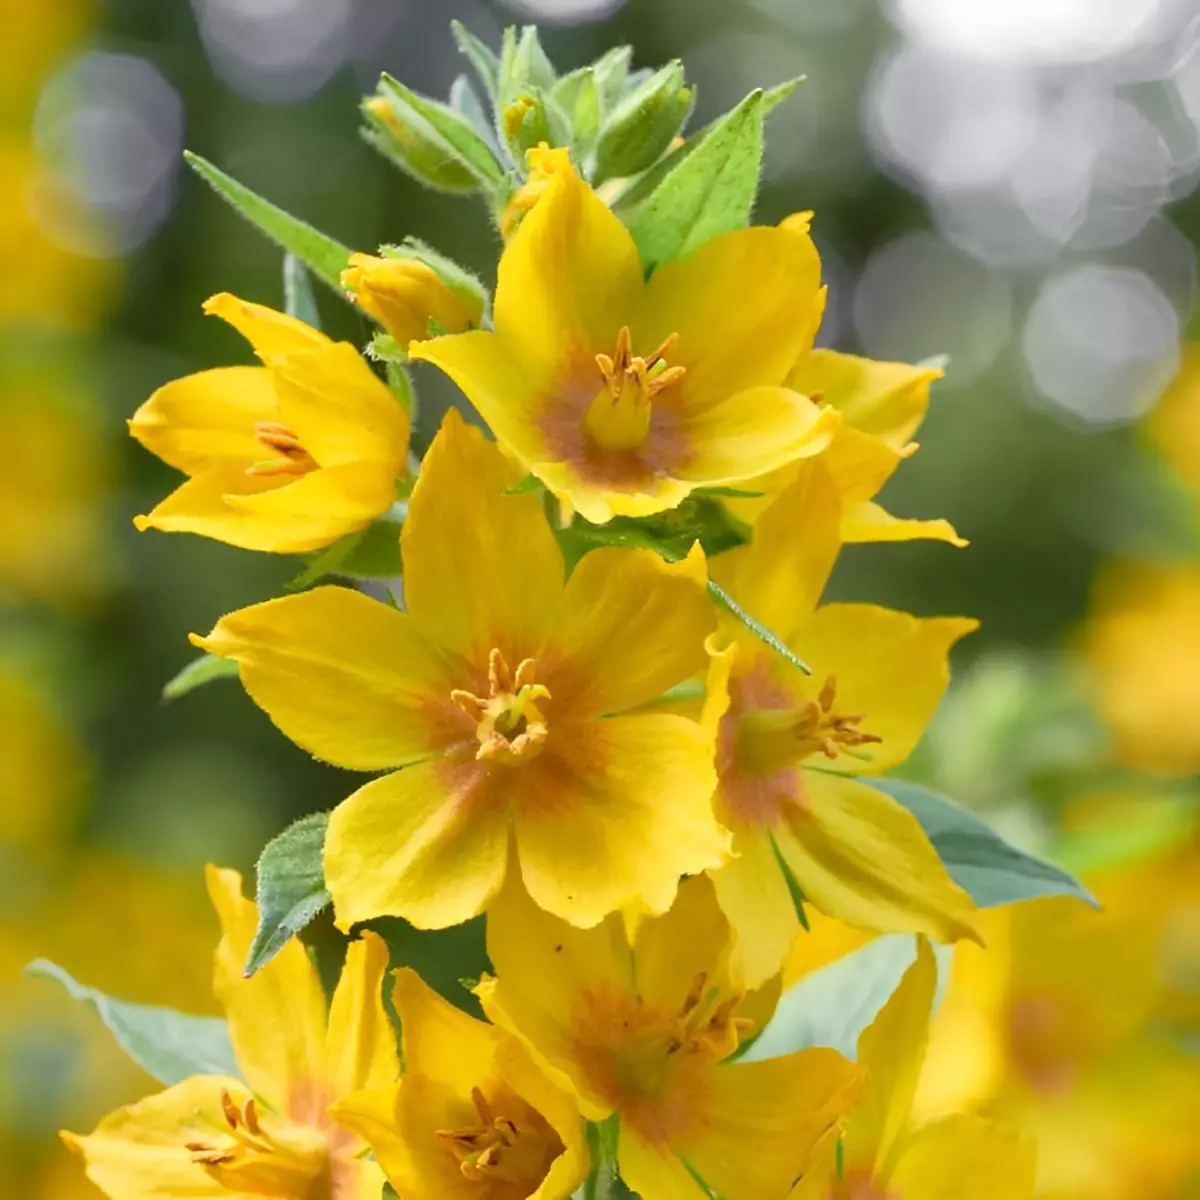 gros plan sur les fleurs jaunes de lysimaque